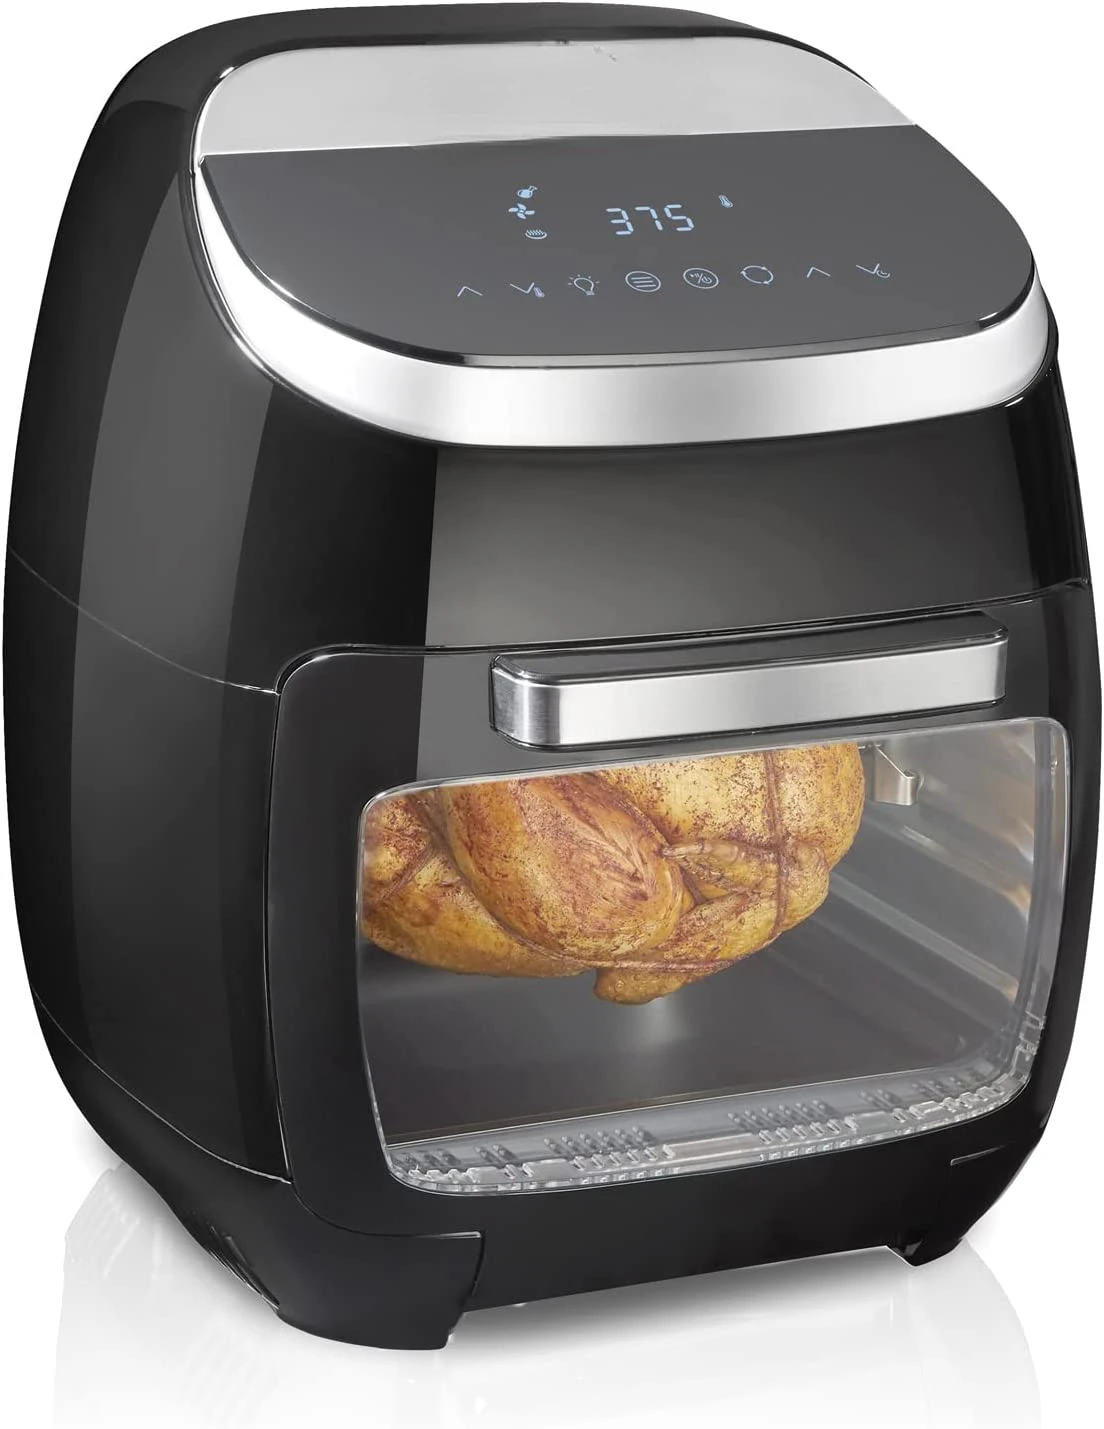 

QT цифровая духовка с жаровня, 8 предустановленных функций, включая Дегидратор, жаровня и тостер, 1700 Вт, черный (35073)